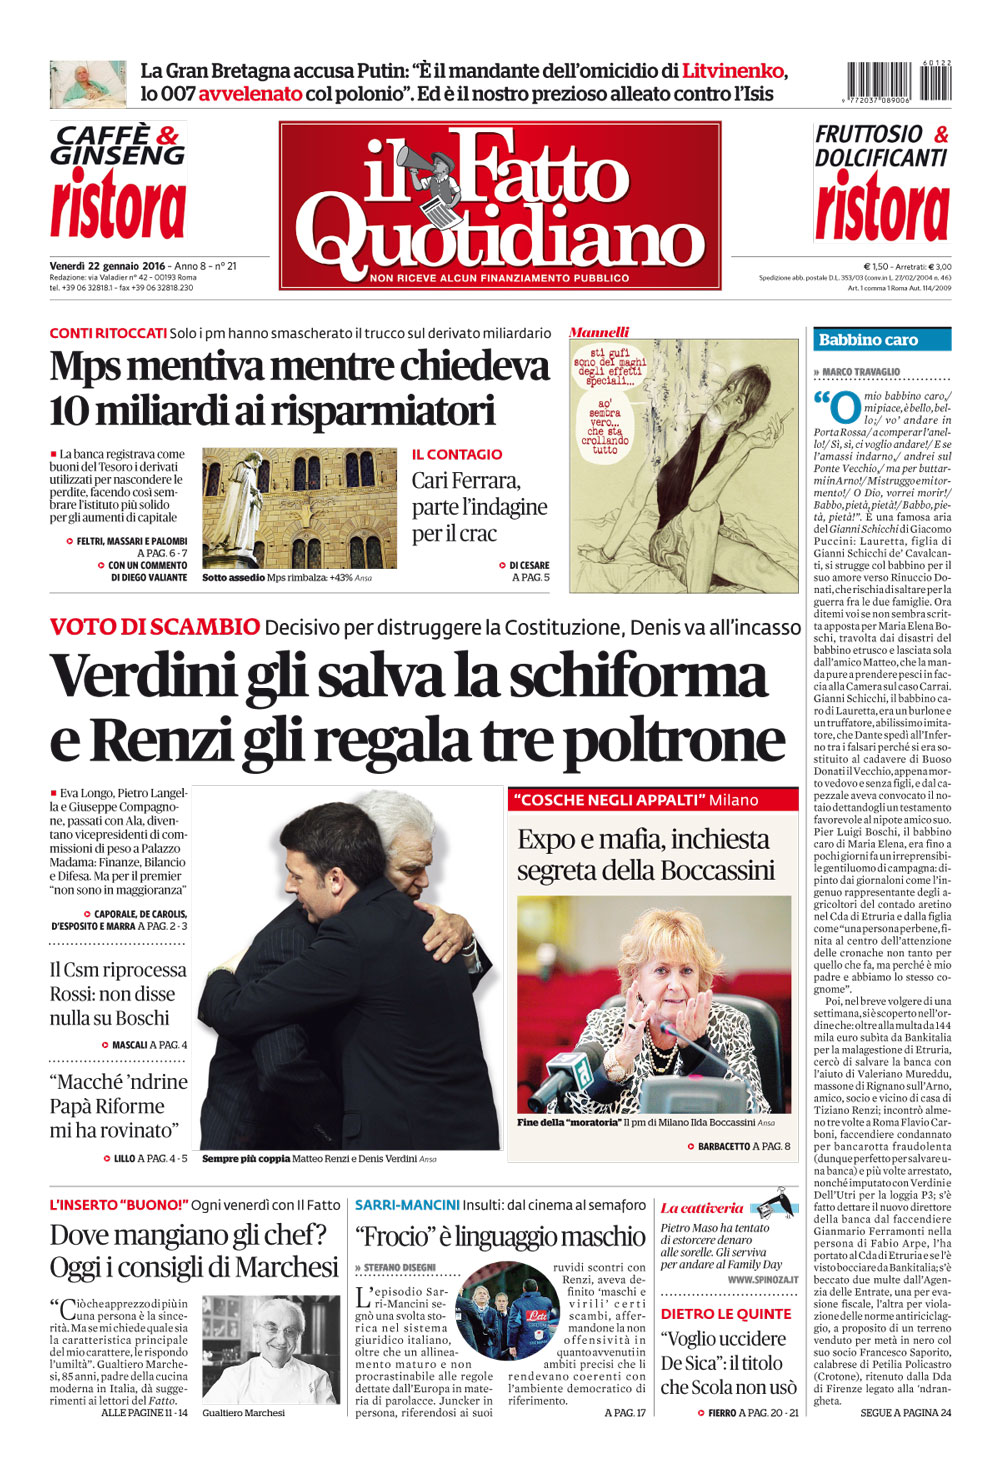 Prima Pagina Il Fatto Quotidiano - Verdini gli salva la schiforma e Renzi gli regala tre poltrone